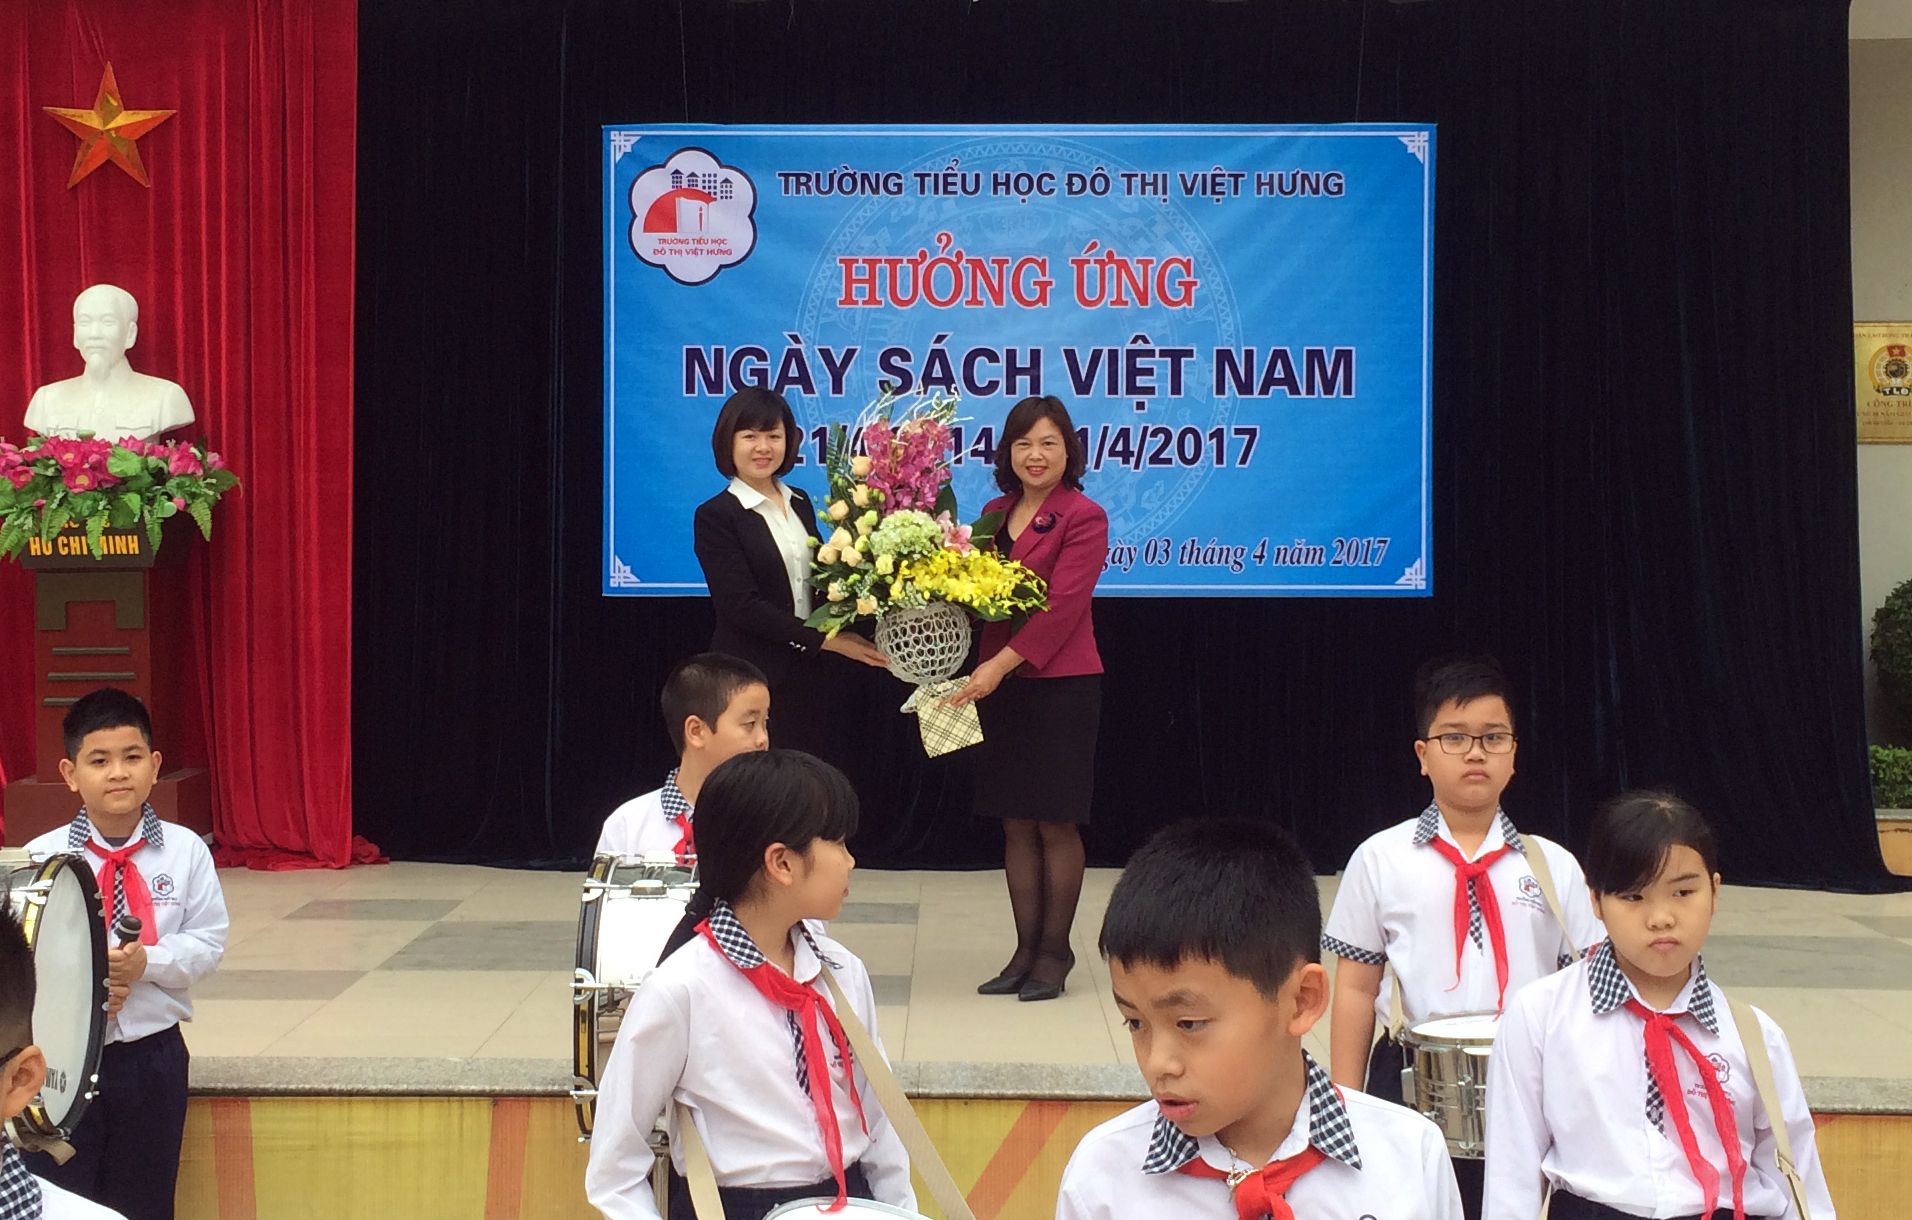 Khối mẫu giáo lớn giao lưu tại trường tiểu học Đô thị Việt hưng (1).jpg